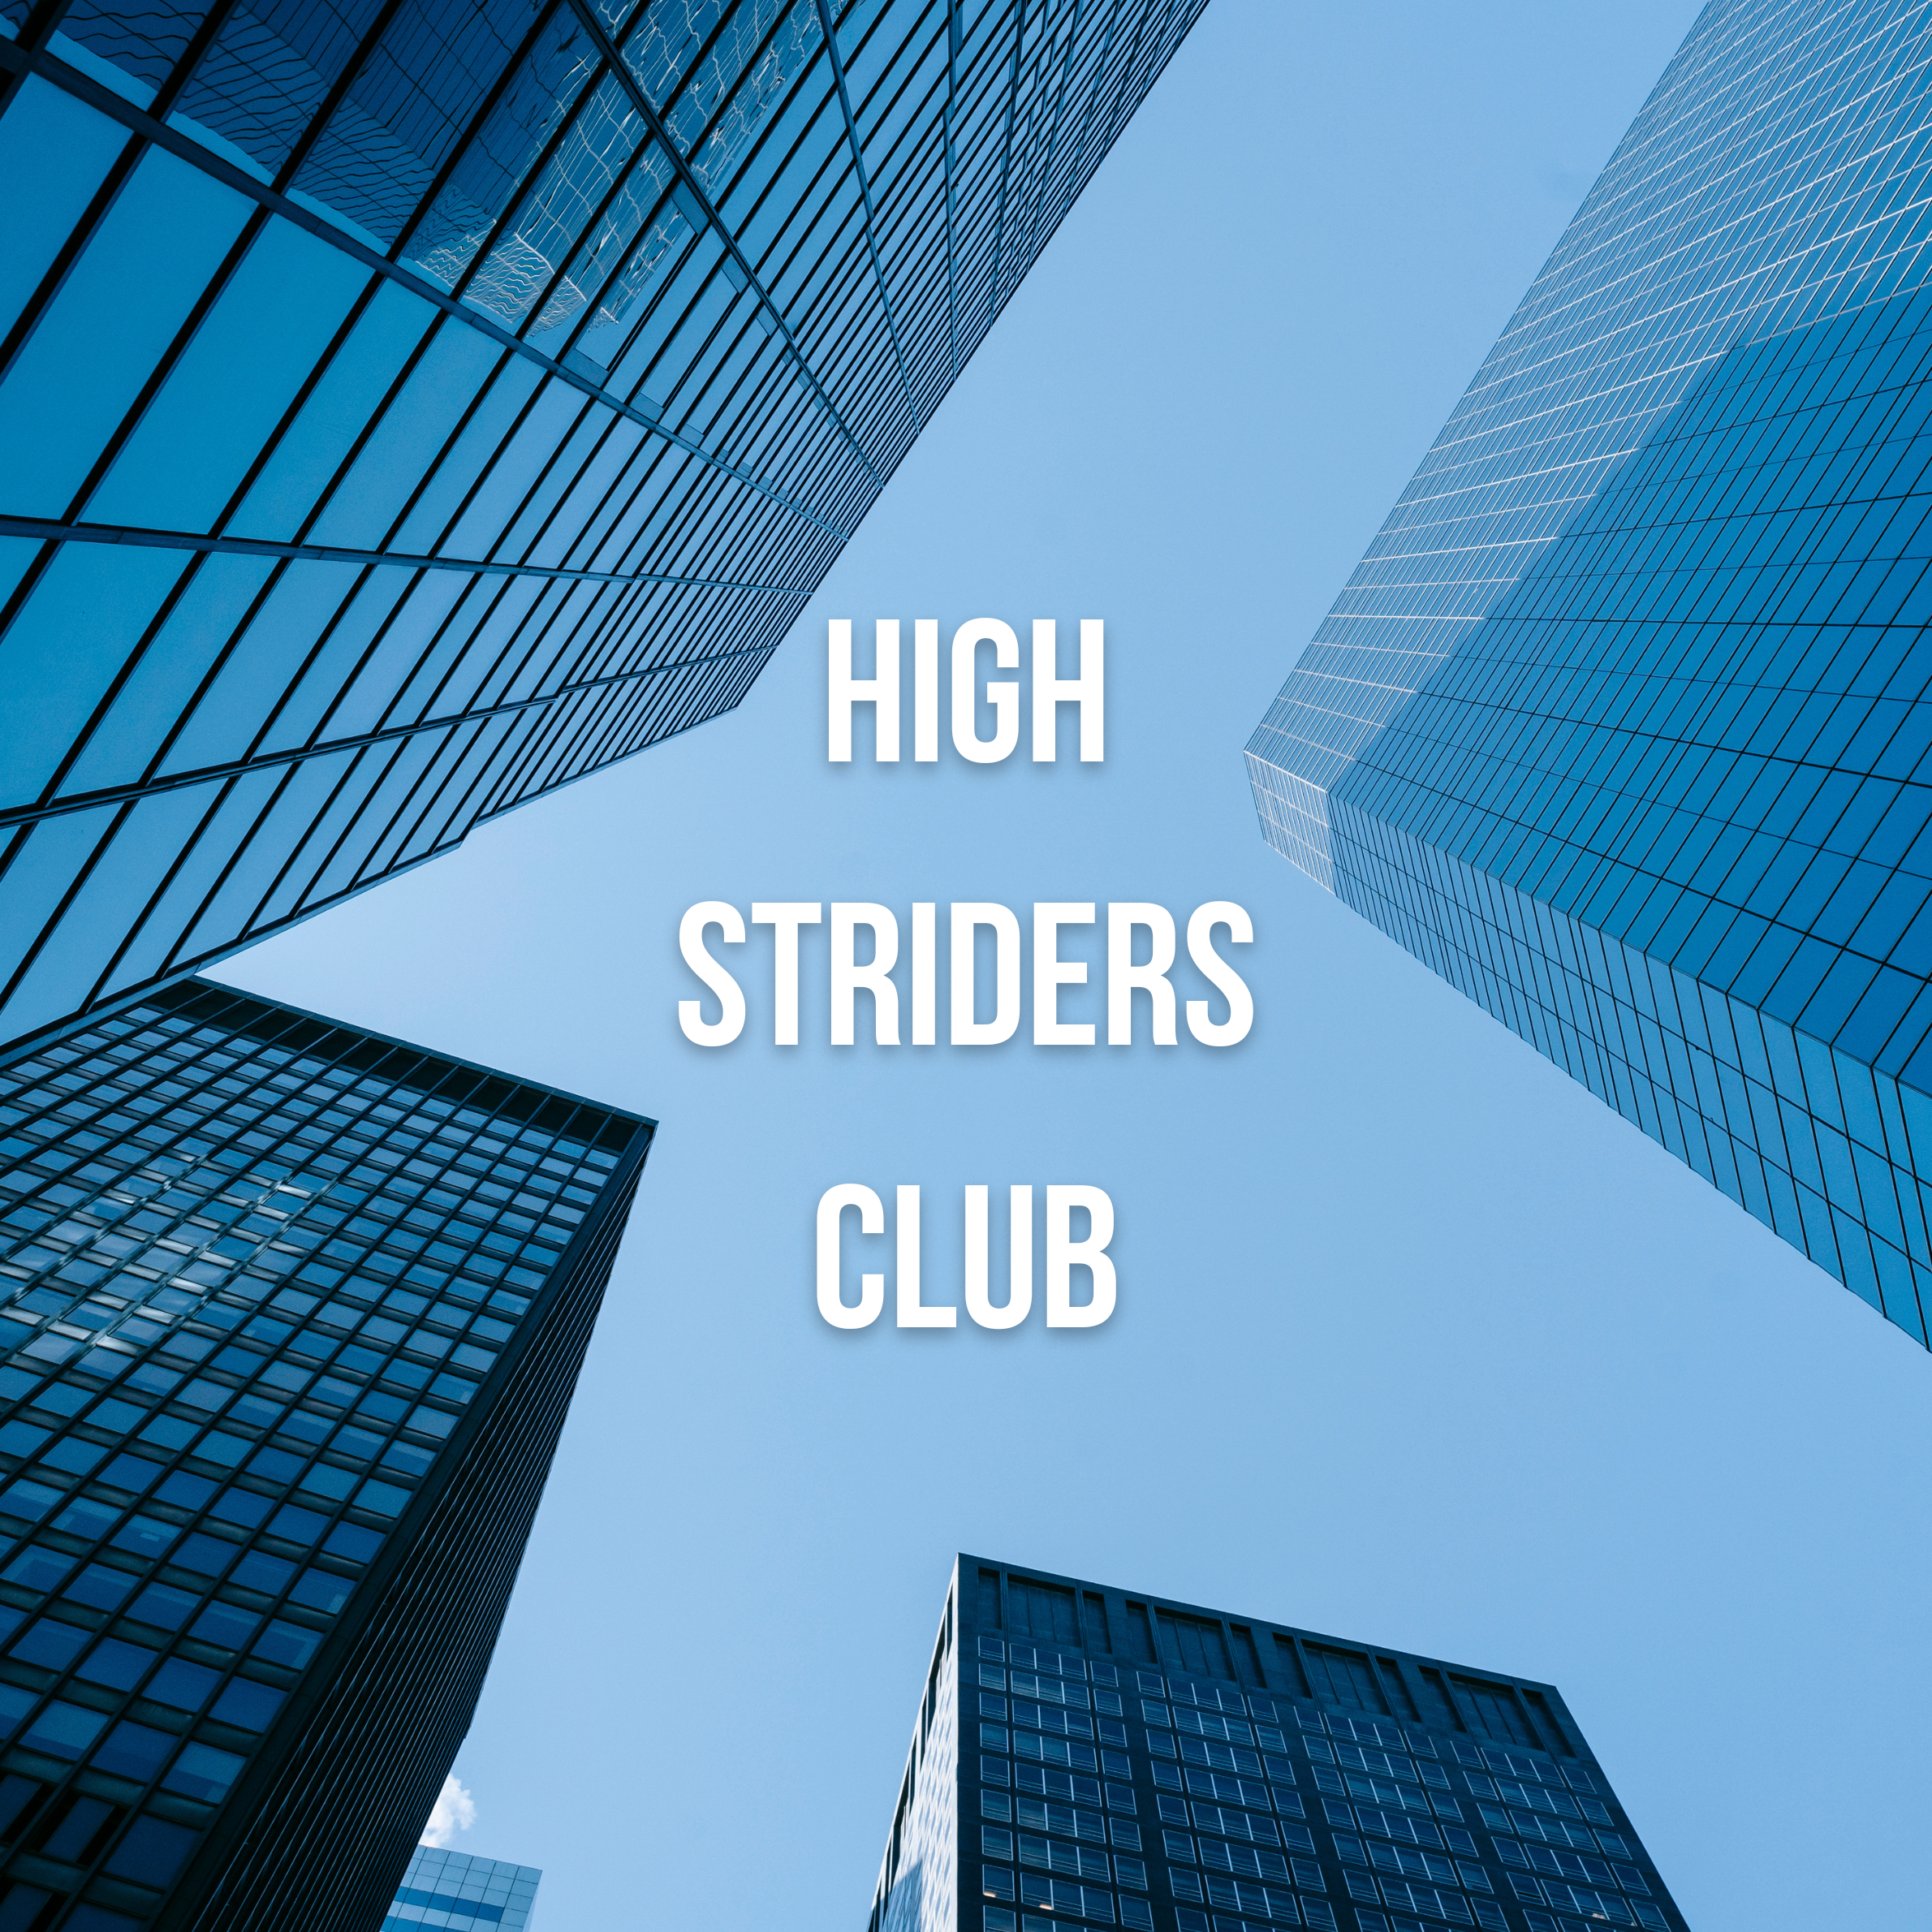 High Striders Club